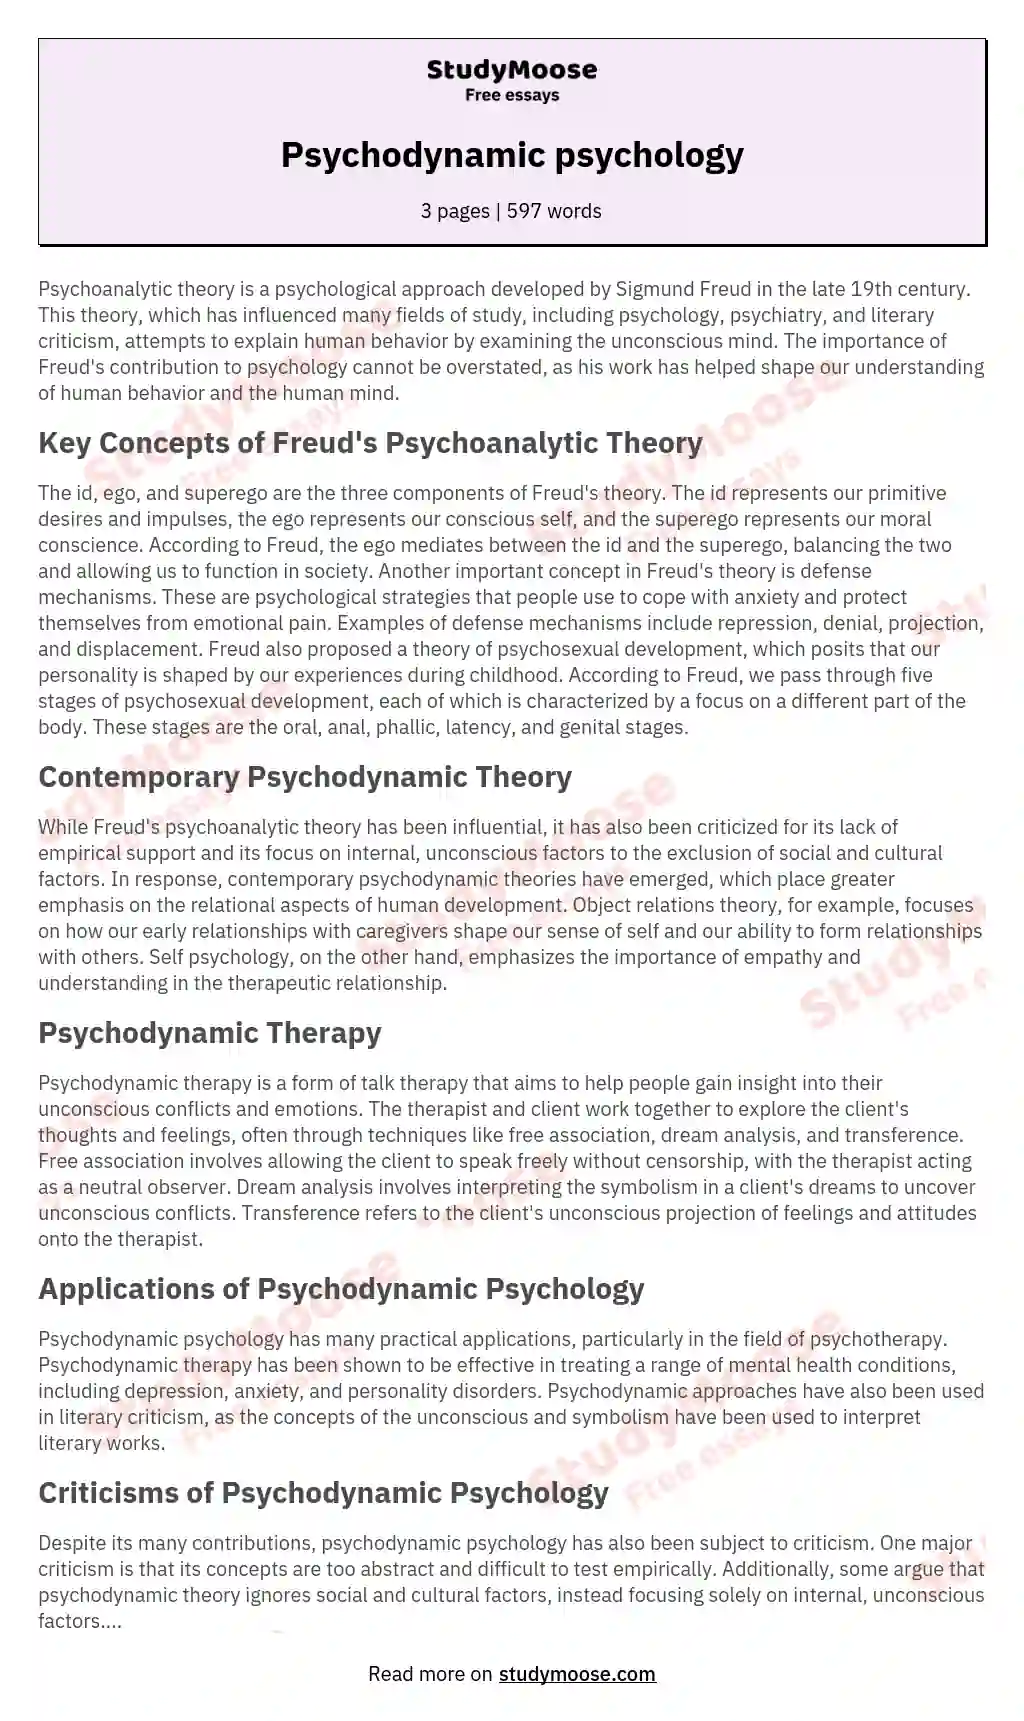 Psychodynamic psychology essay